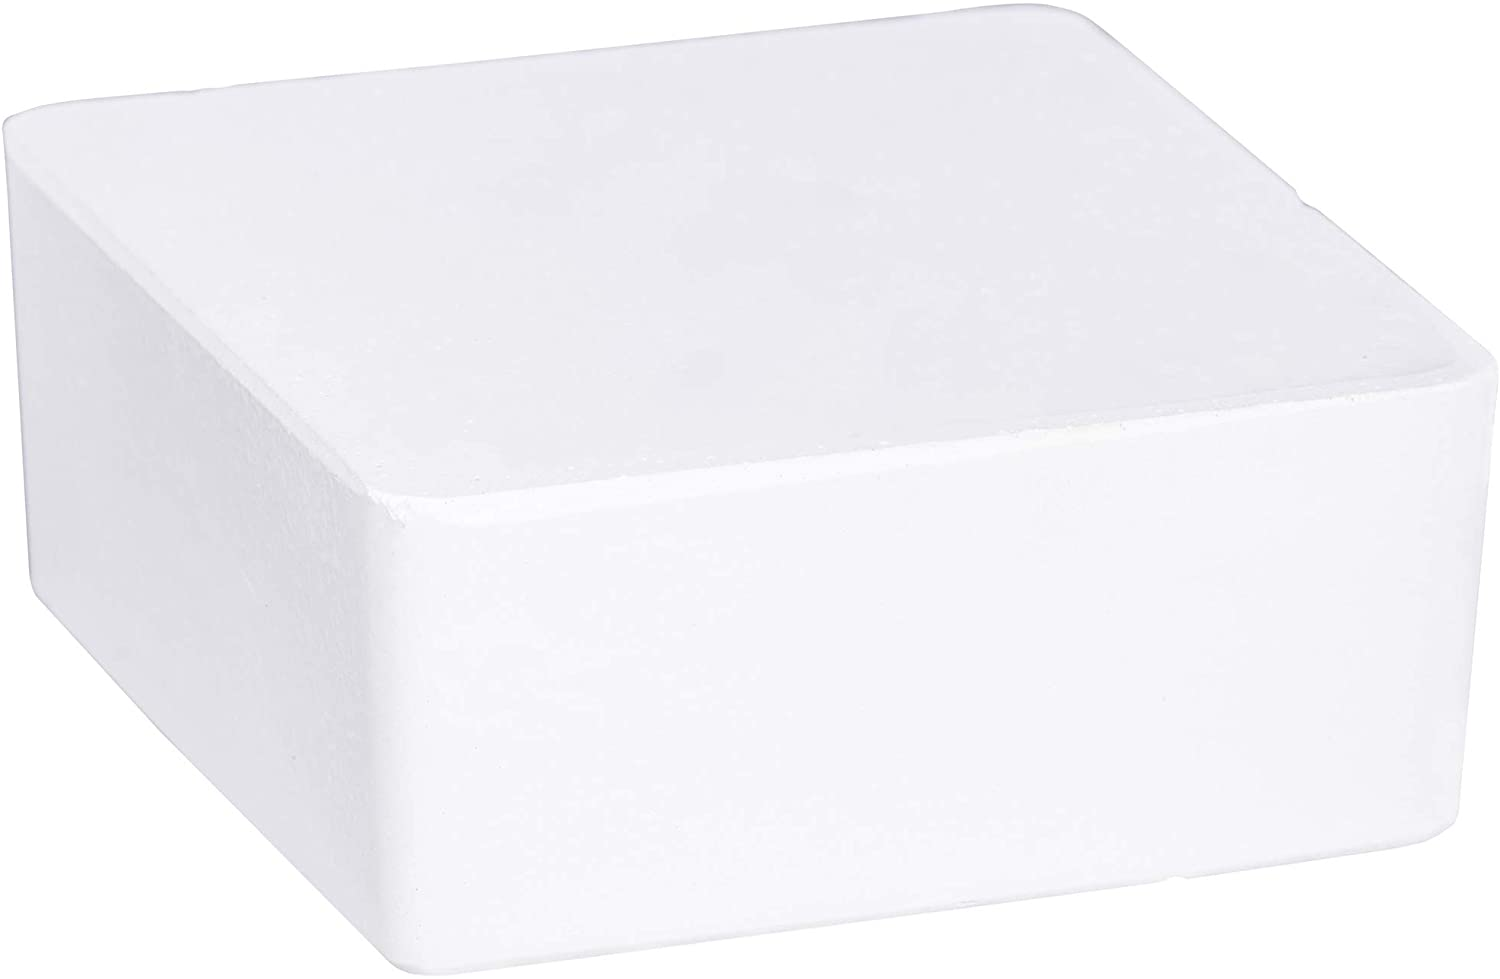 Raumentfeuchter Cube Nachfüller 1000 g - Luftentfeuchter, Nachfüllpack, Calciumchlorid, 12 x 5 x 12 cm, Weiß